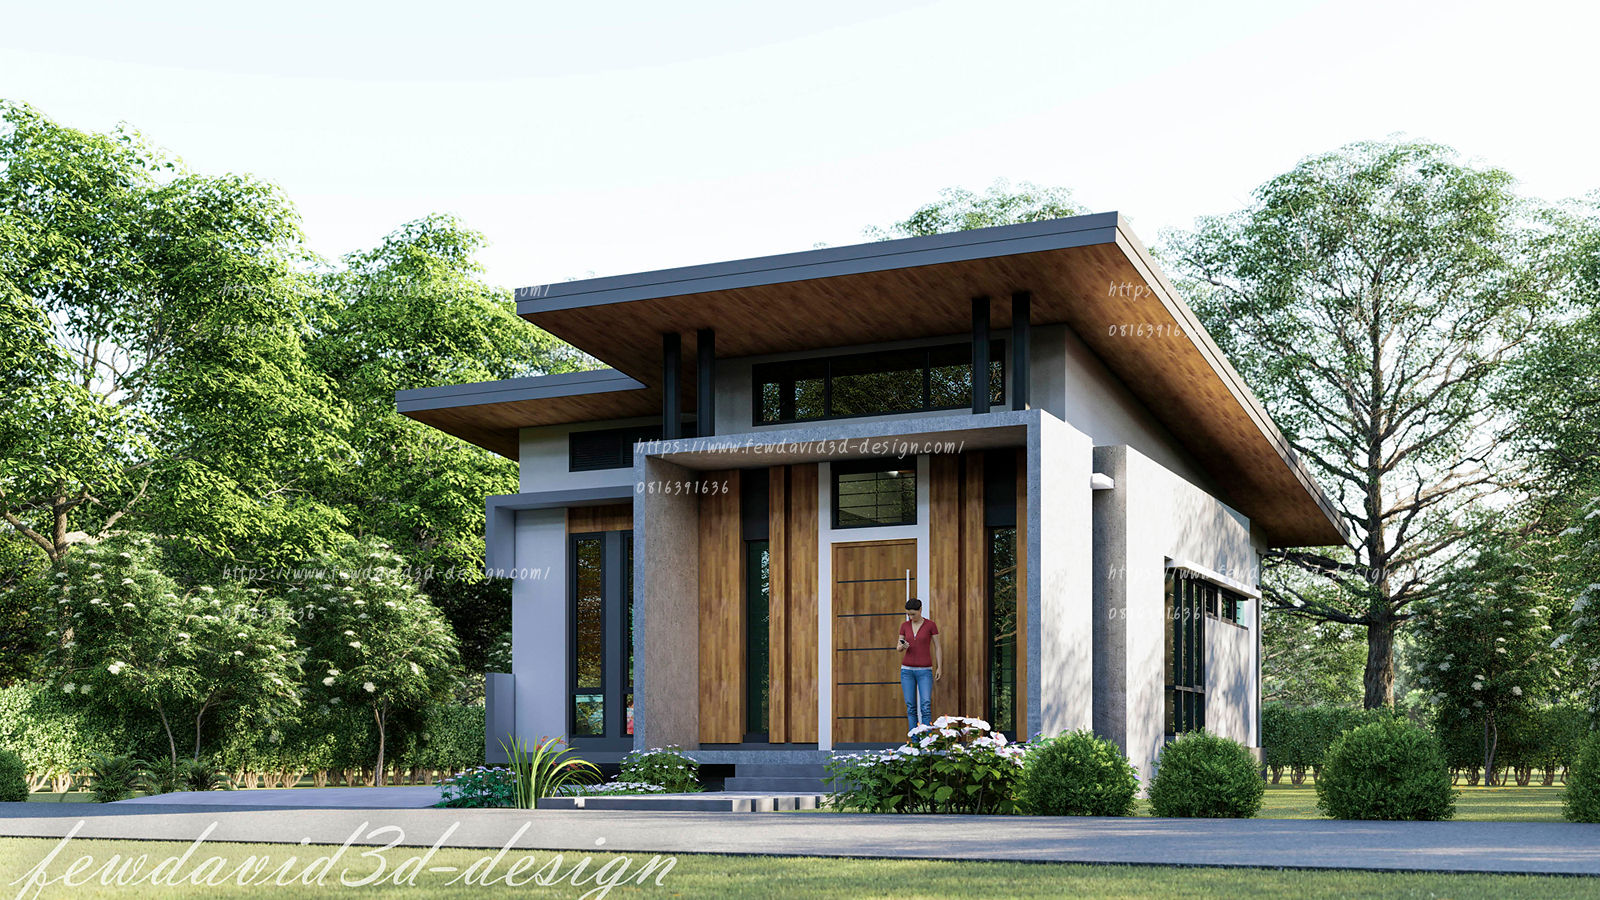 บ้านพักอาศัยชั้นเดียว อ.เมือง จ.ลพบุรี คุณดารารัตน์ฯ, fewdavid3d-design fewdavid3d-design บ้านเดี่ยว